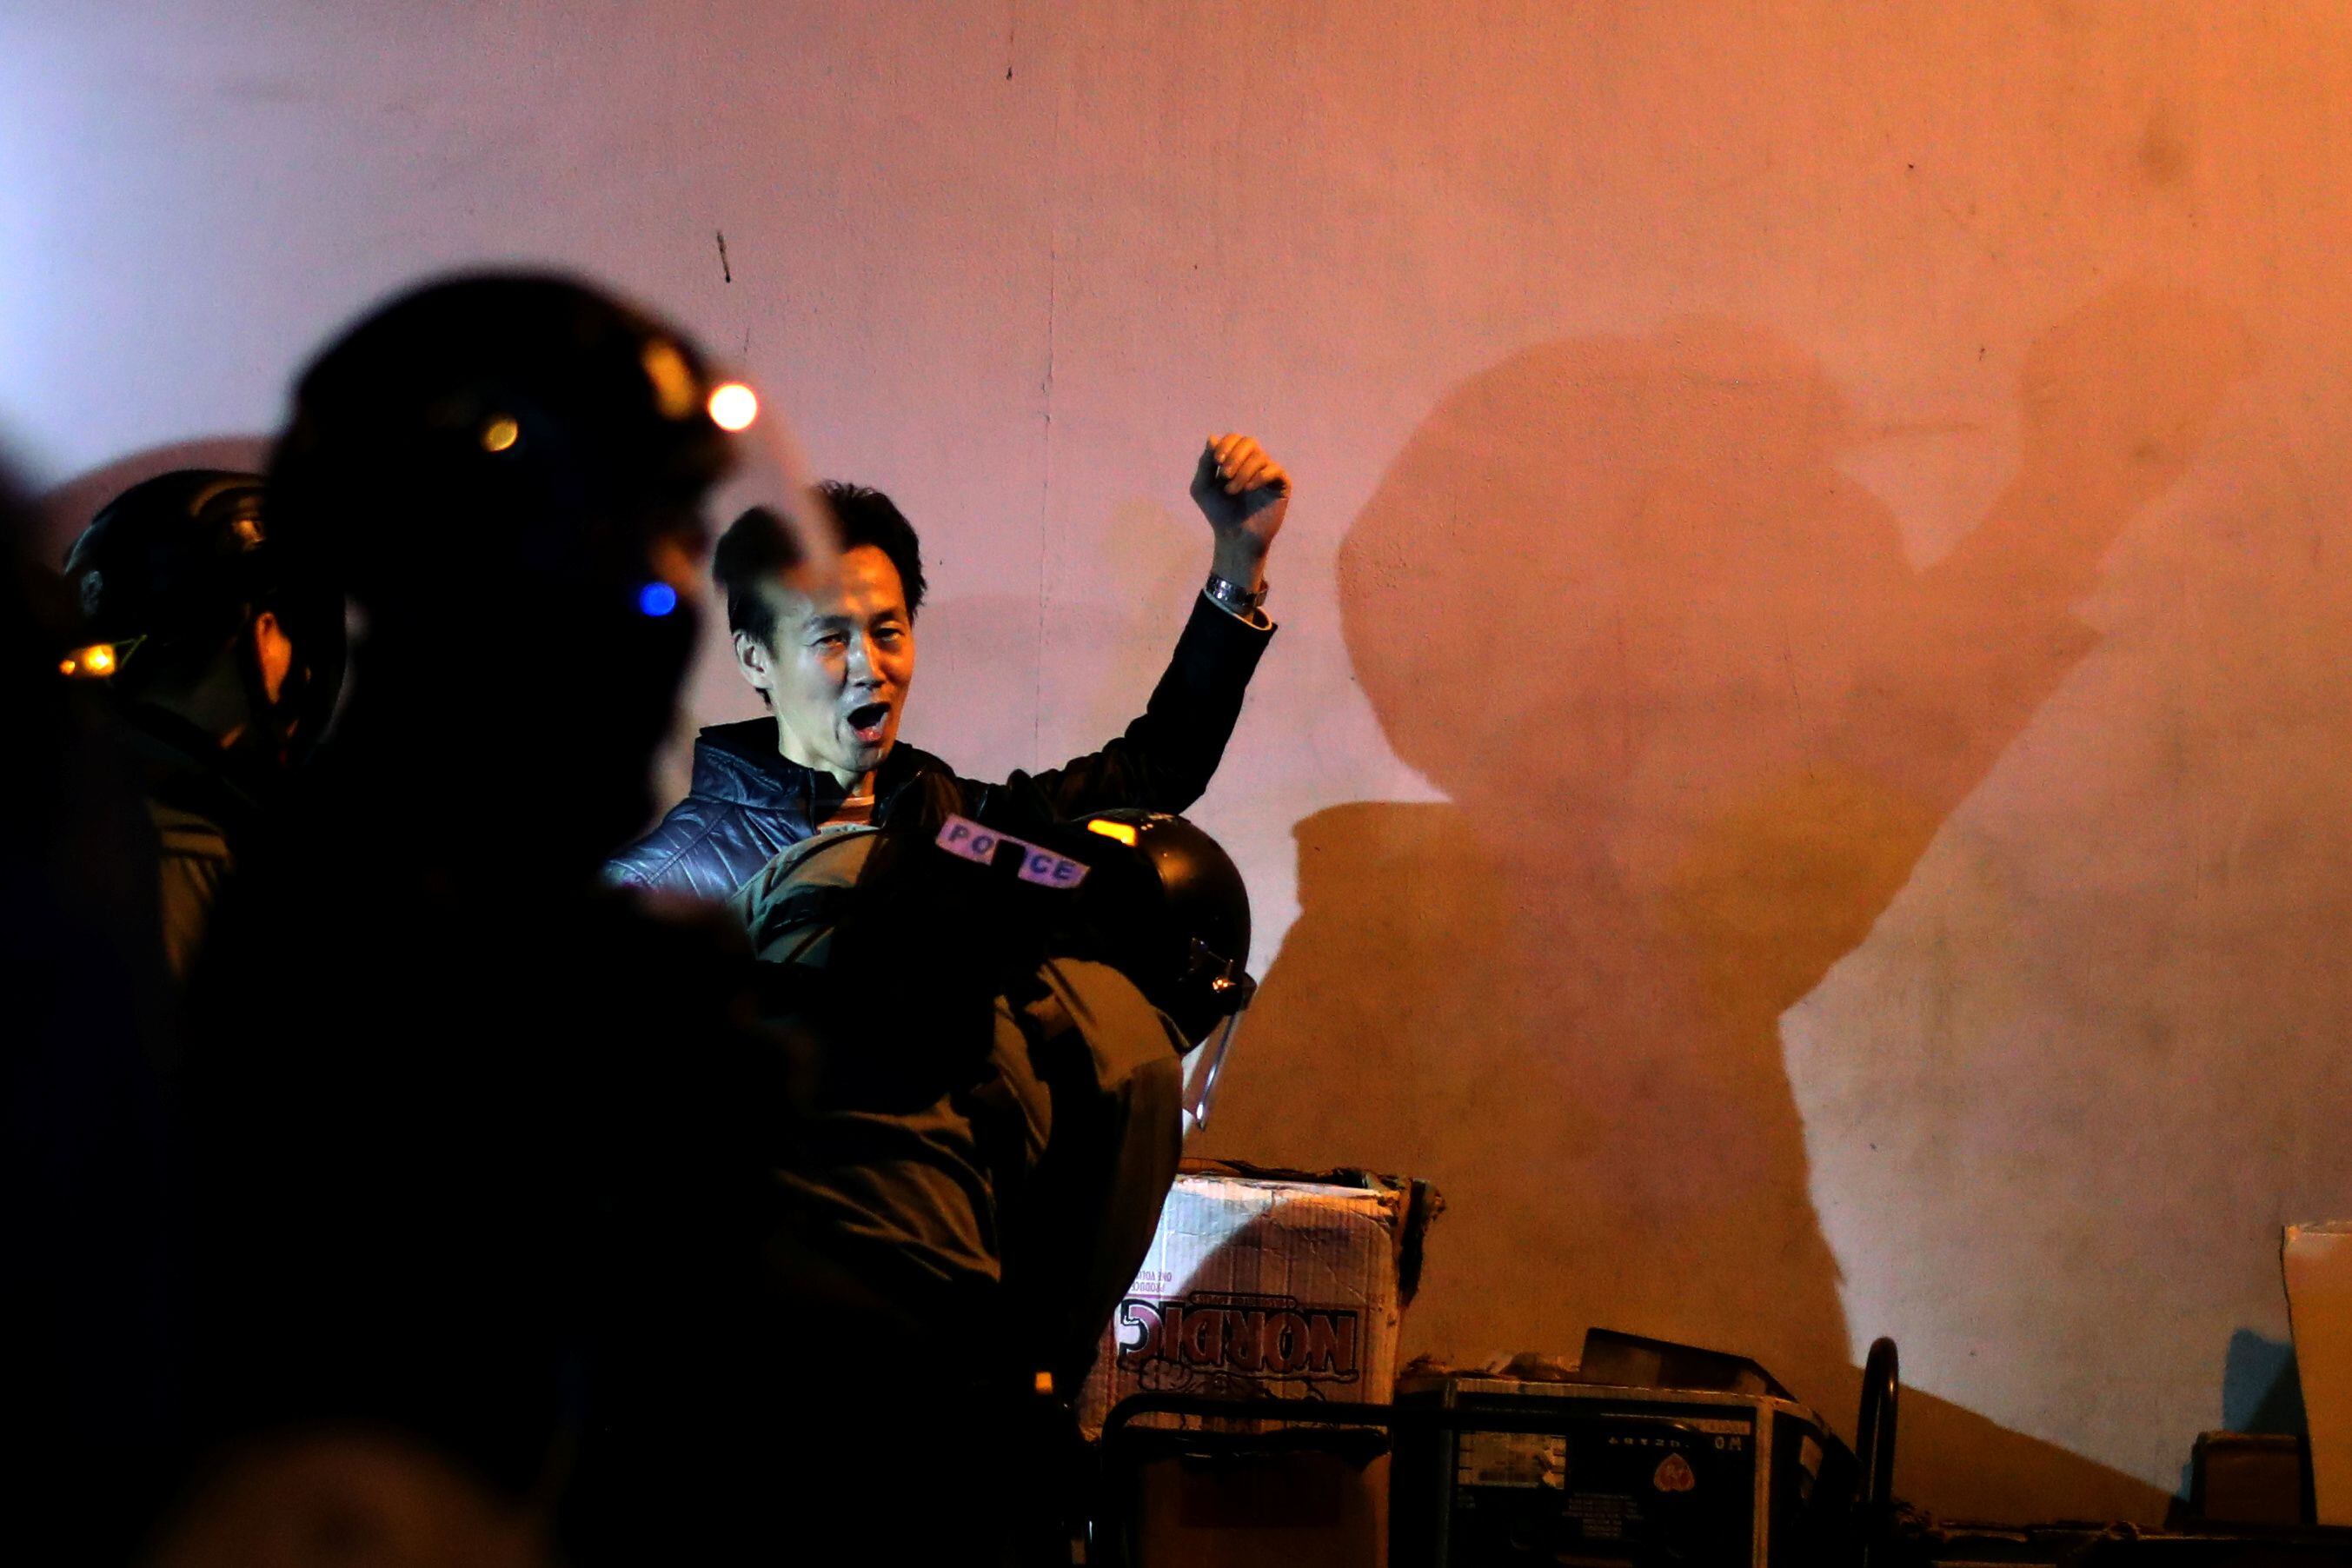 Un manifestante de Hong Kong grita mientras es detenido en una manifestación en apoyo de los derechos humanos de los uigures de Xinjiang en Hong Kong, China, el 22 de diciembre de 2019 (REUTERS/Lucy Nicholson)